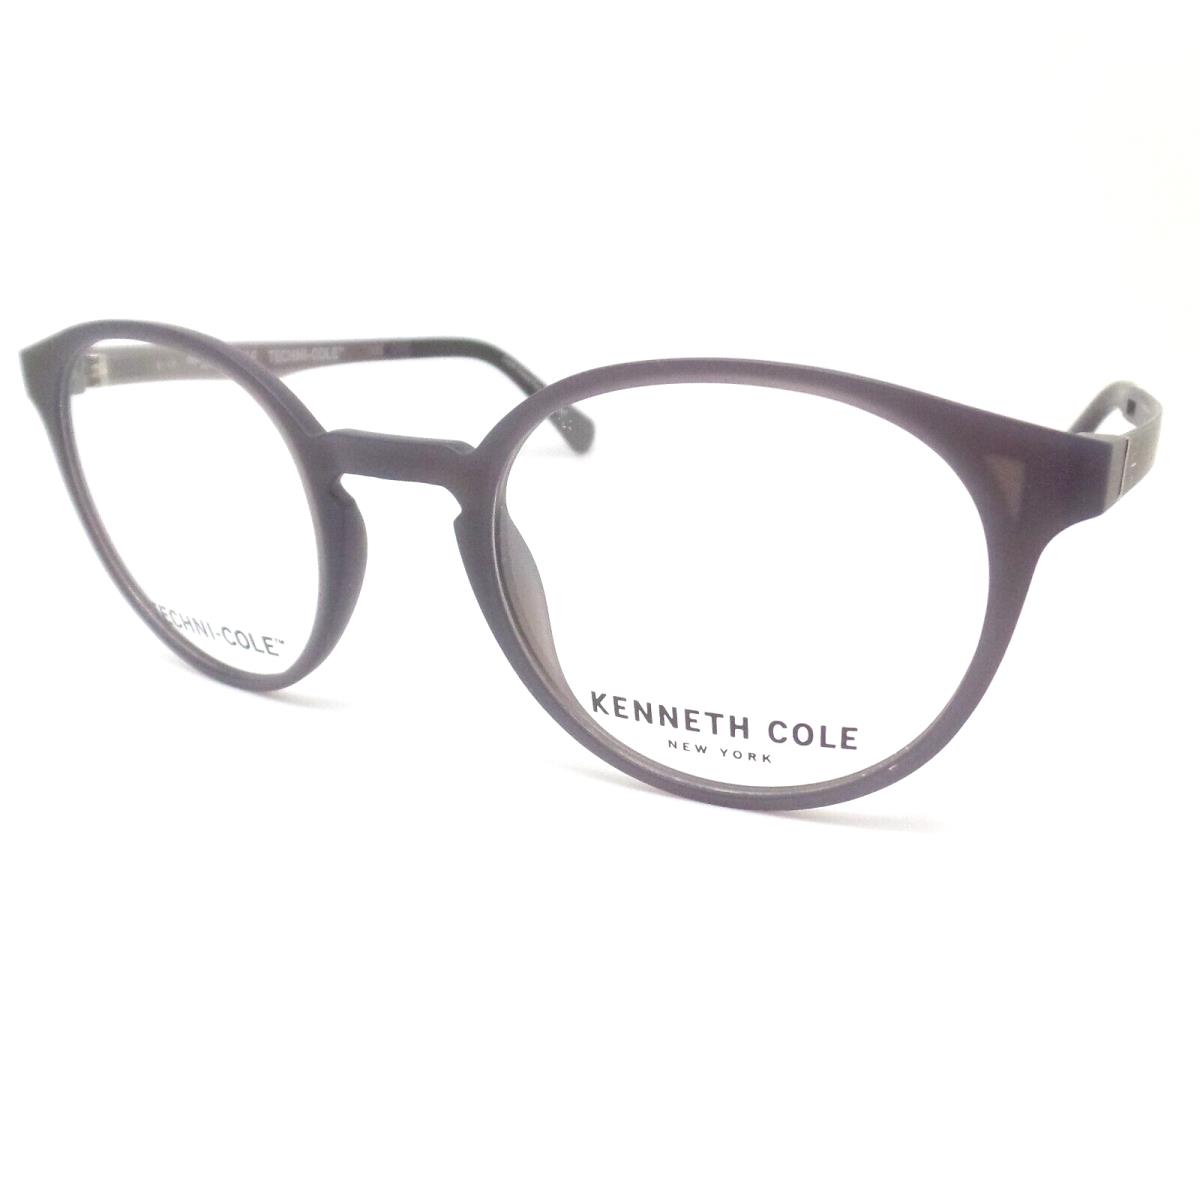 Kenneth Cole KC0319 020 Matte Grey RX Eyeglasses Frames